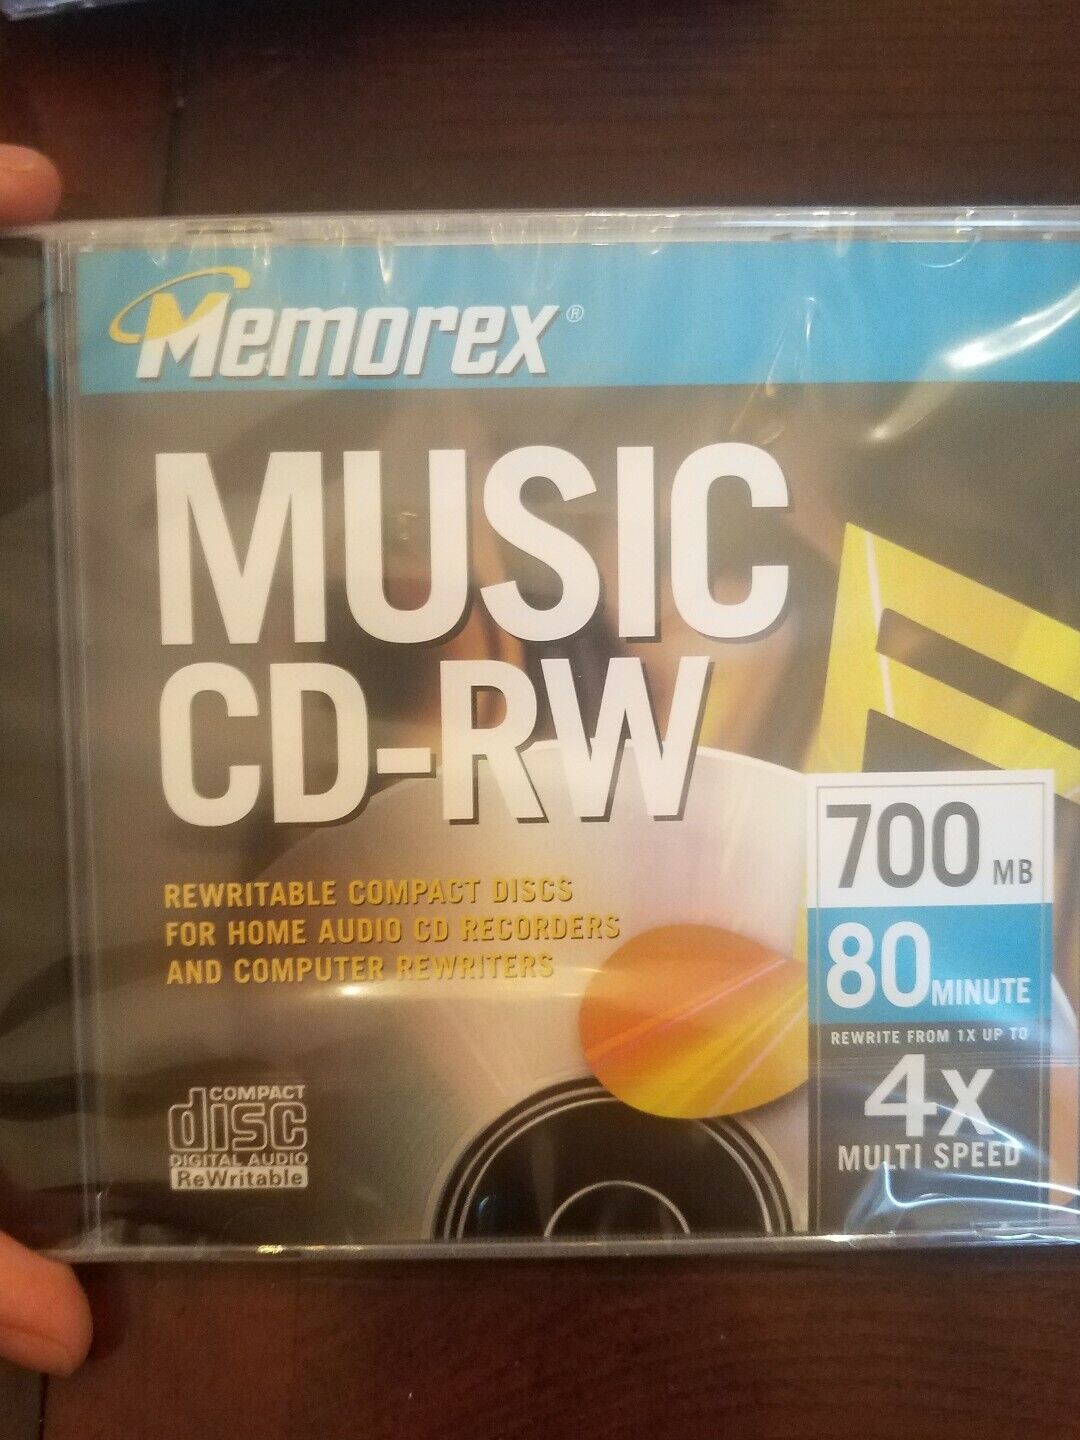 Memorex Music CD-RW 700 MB Rare Vintage 